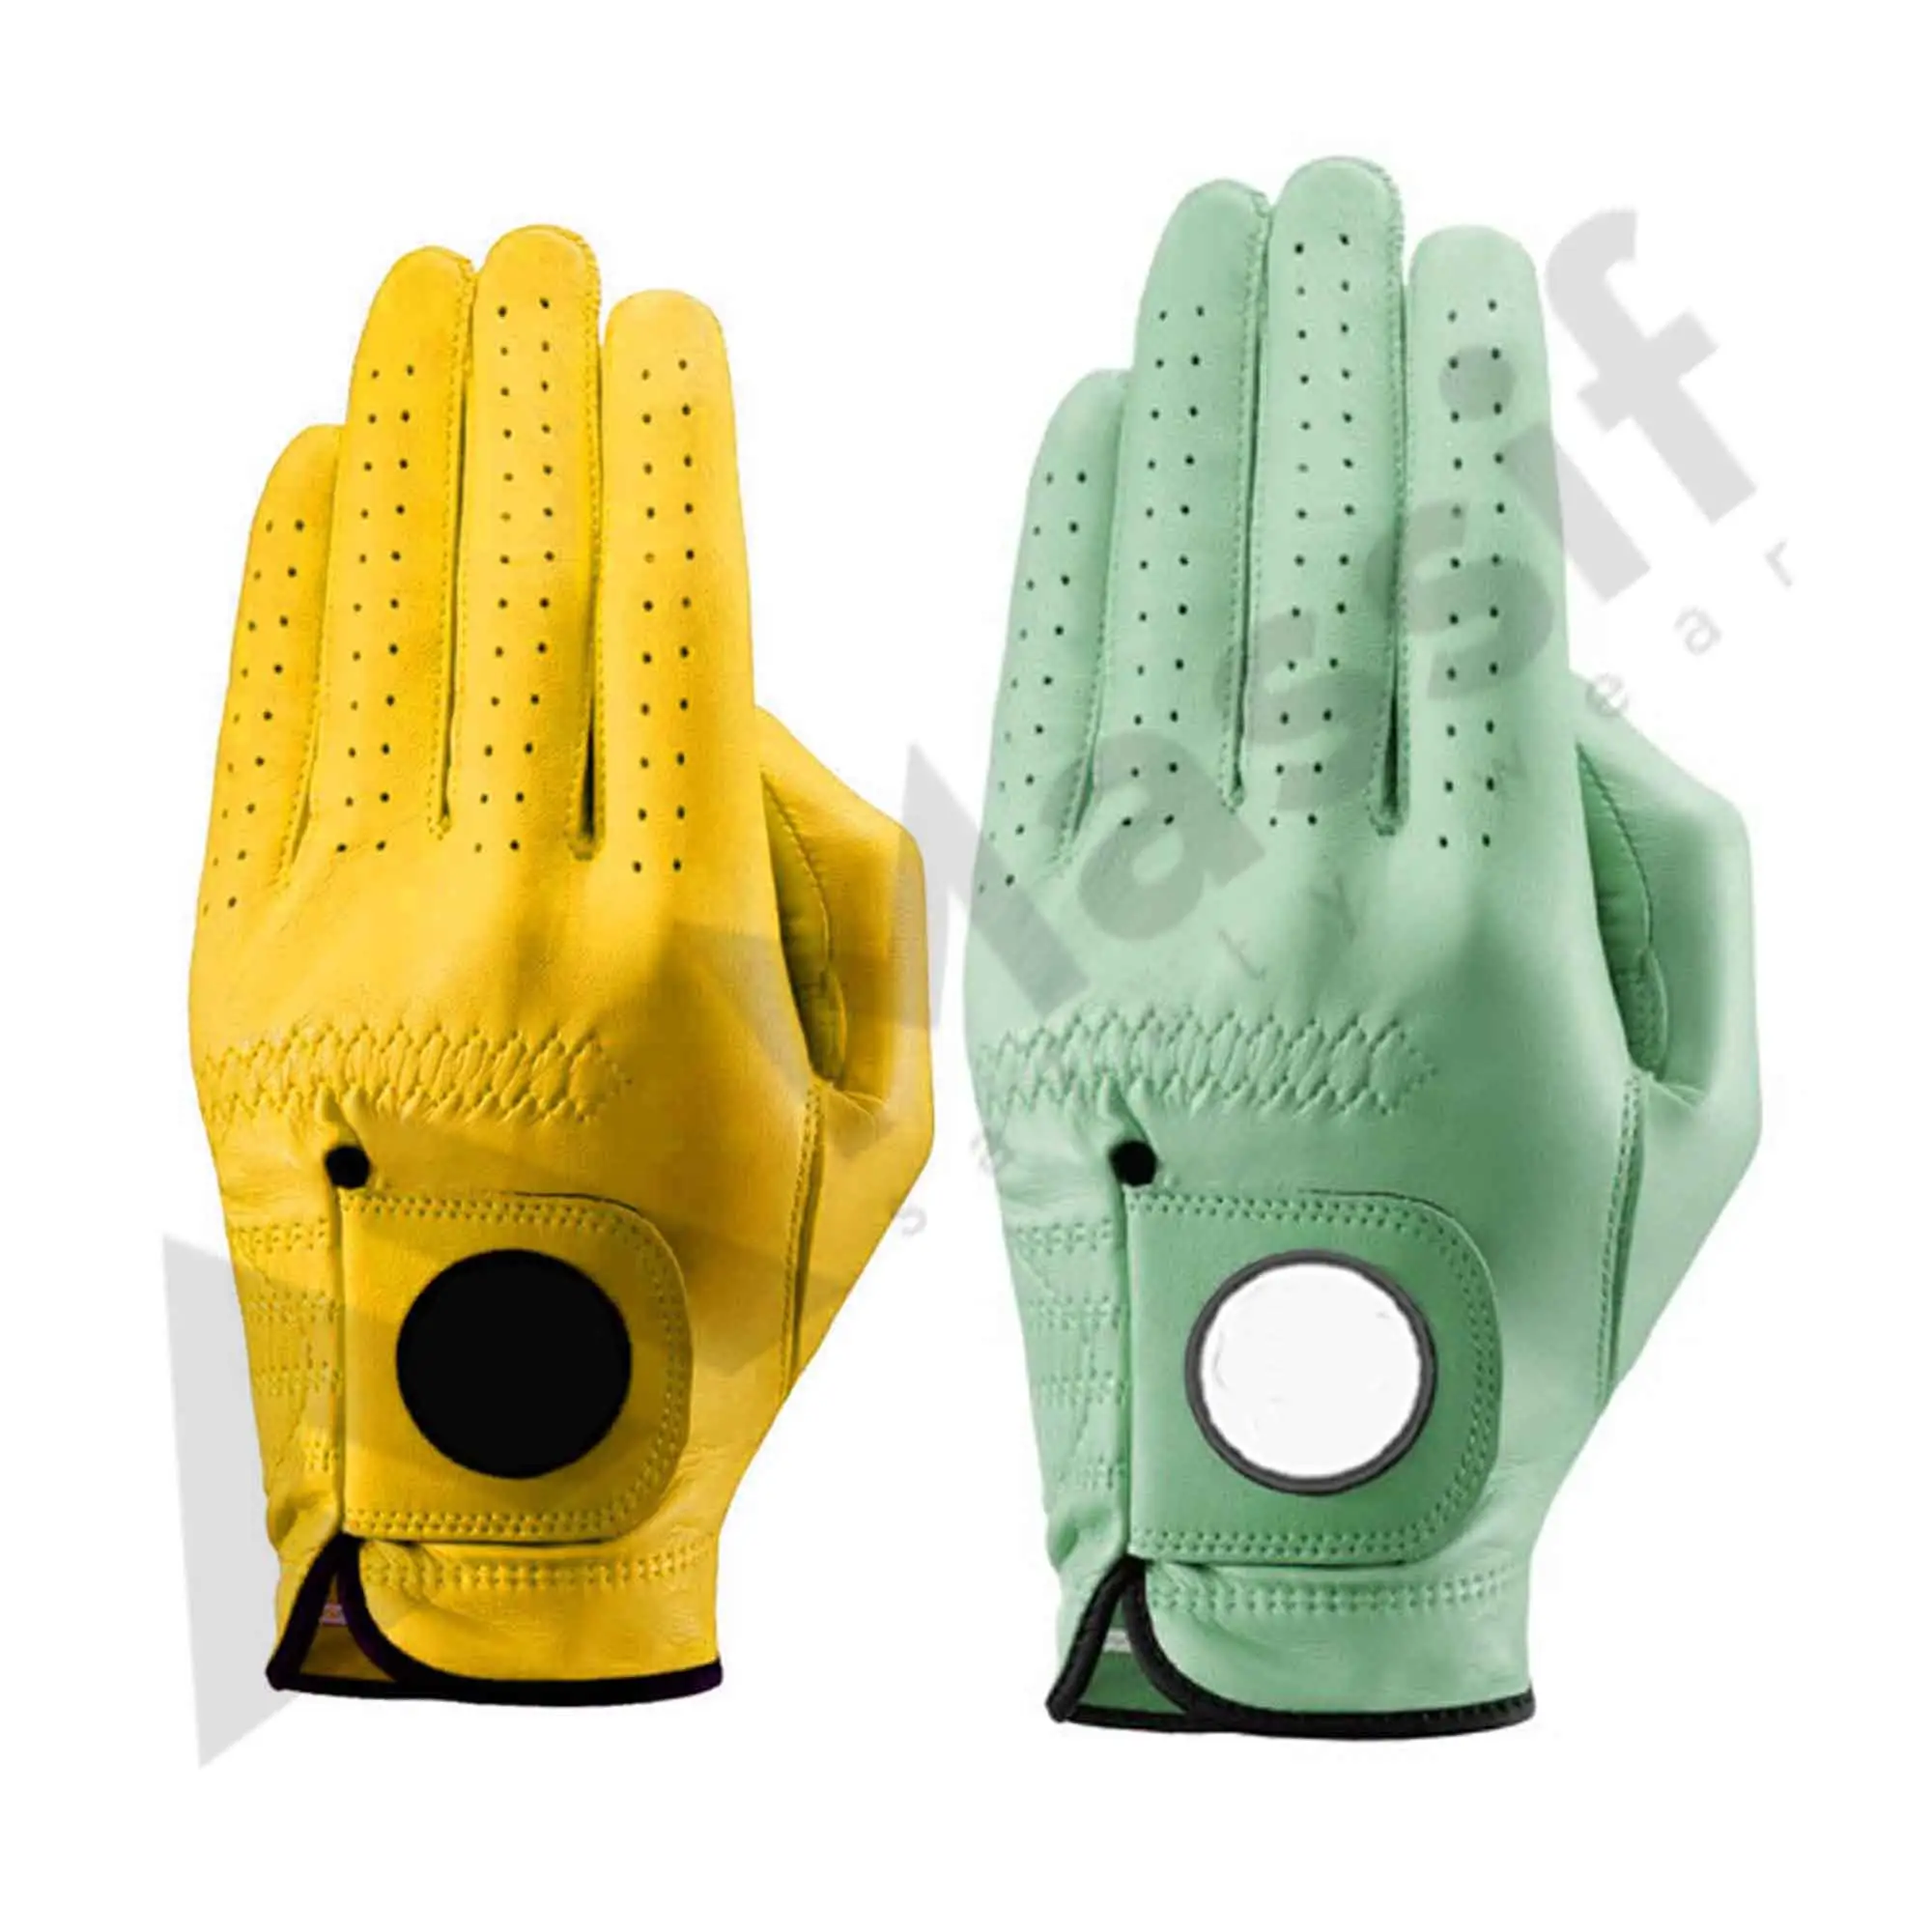 Haute Qualité Fabricant Cabretta Golf-gants de Golf En Cuir Synthétique Gants Personnalisé Marque MSW-933 50 Pièces Mains Hommes PK